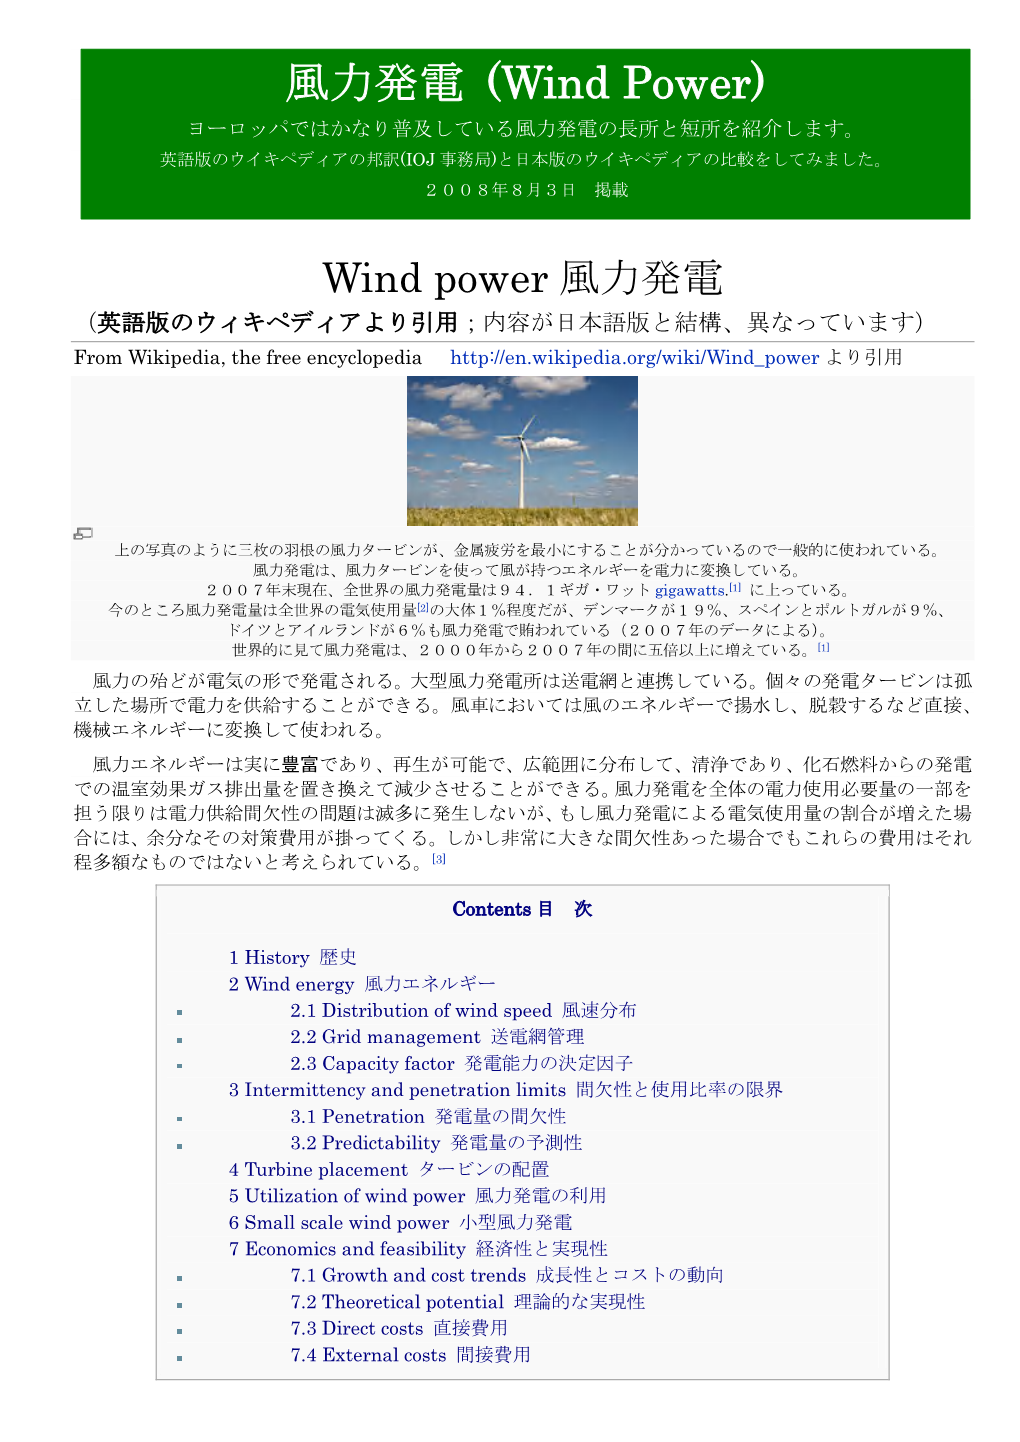 風力発電 (Wind Power) ヨーロッパではかなり普及している風力発電の長所と短所を紹介します。 英語版のウイキペディアの邦訳(IOJ 事務局)と日本版のウイキペディアの比較をしてみました。 ２００８年８月３日 掲載